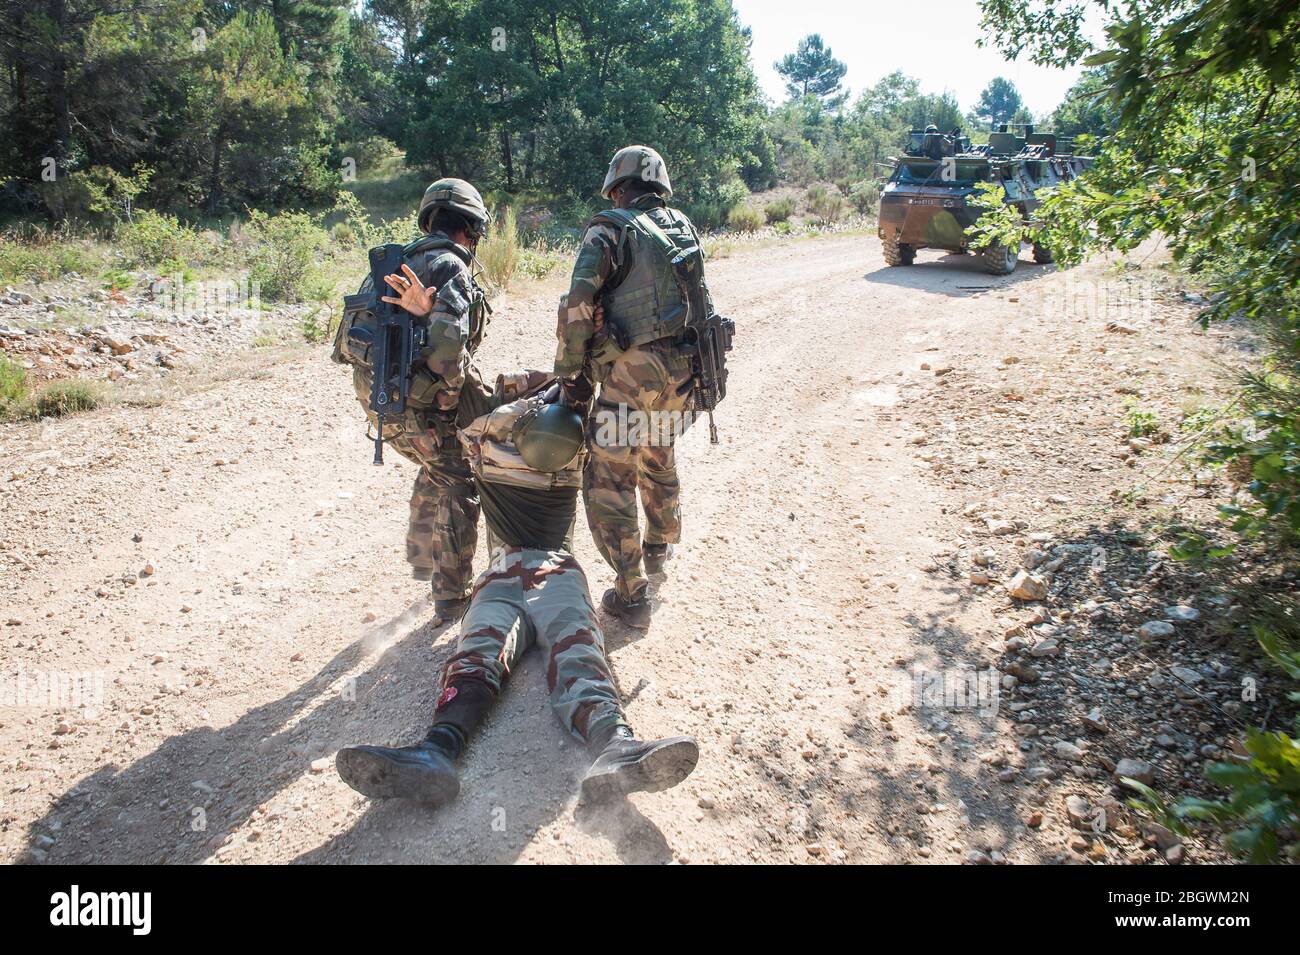 DRAGUIGNAN, FRANKREICH - JULI 21: Soldaten retten einen gefälschten Verwundeten während eines simulierten Konflikts zwischen Soldaten und Terroristen, mit gefälschten Leichen, gefälscht Stockfoto